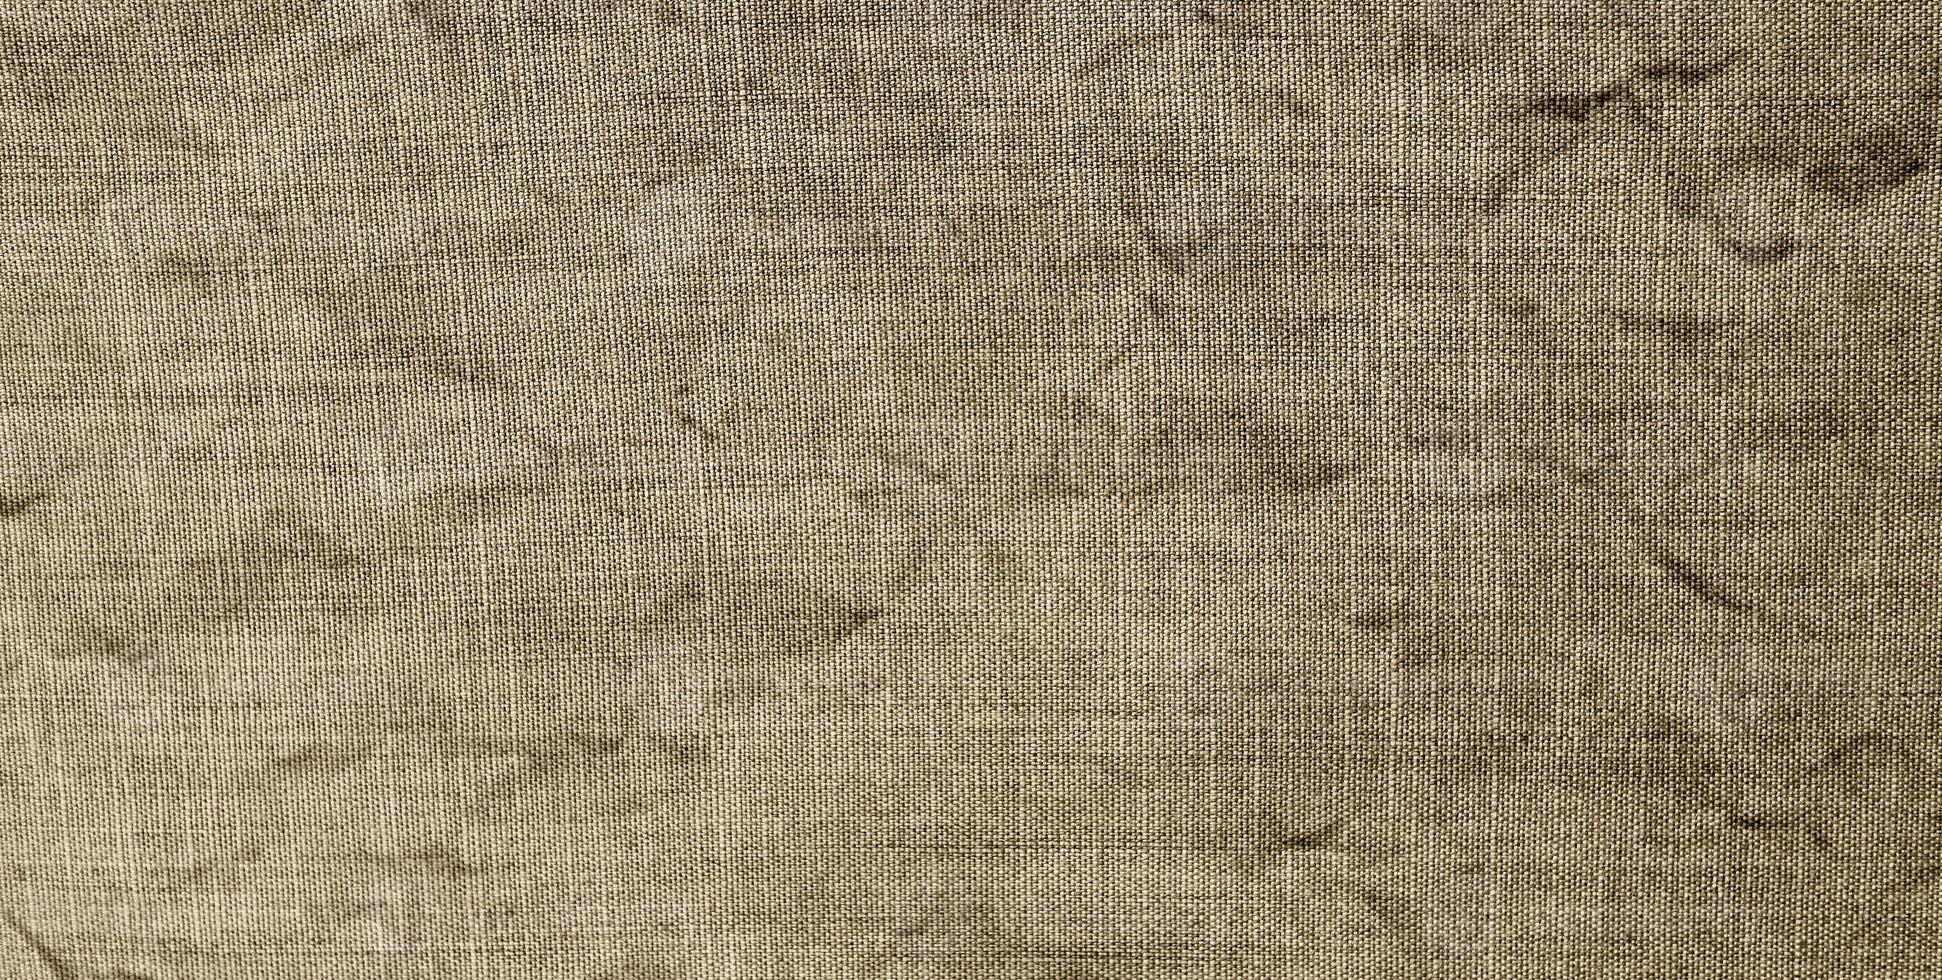 algodão natural ou têxteis de linho. textura de tecido grunge para fundo foto